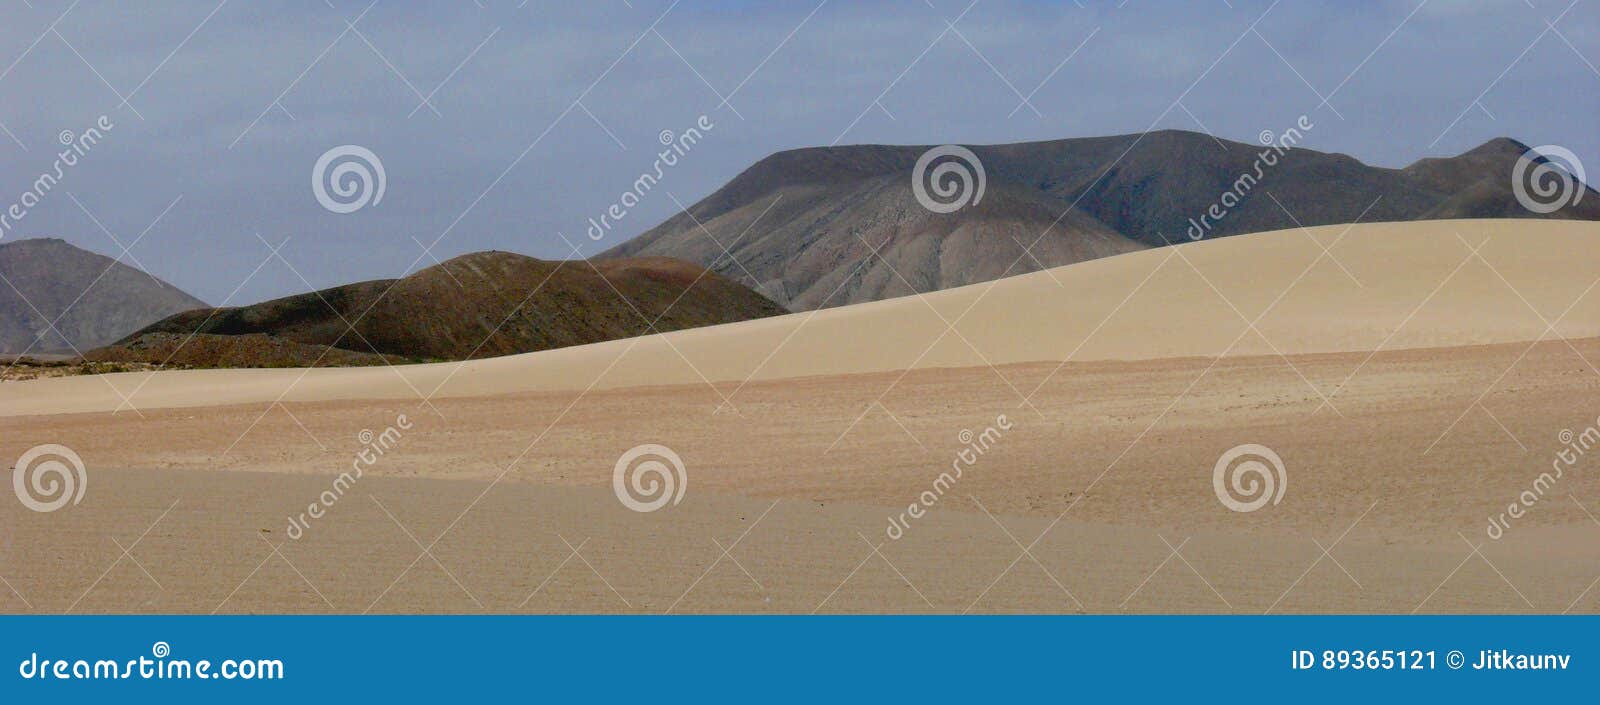 fuerteventura dunas